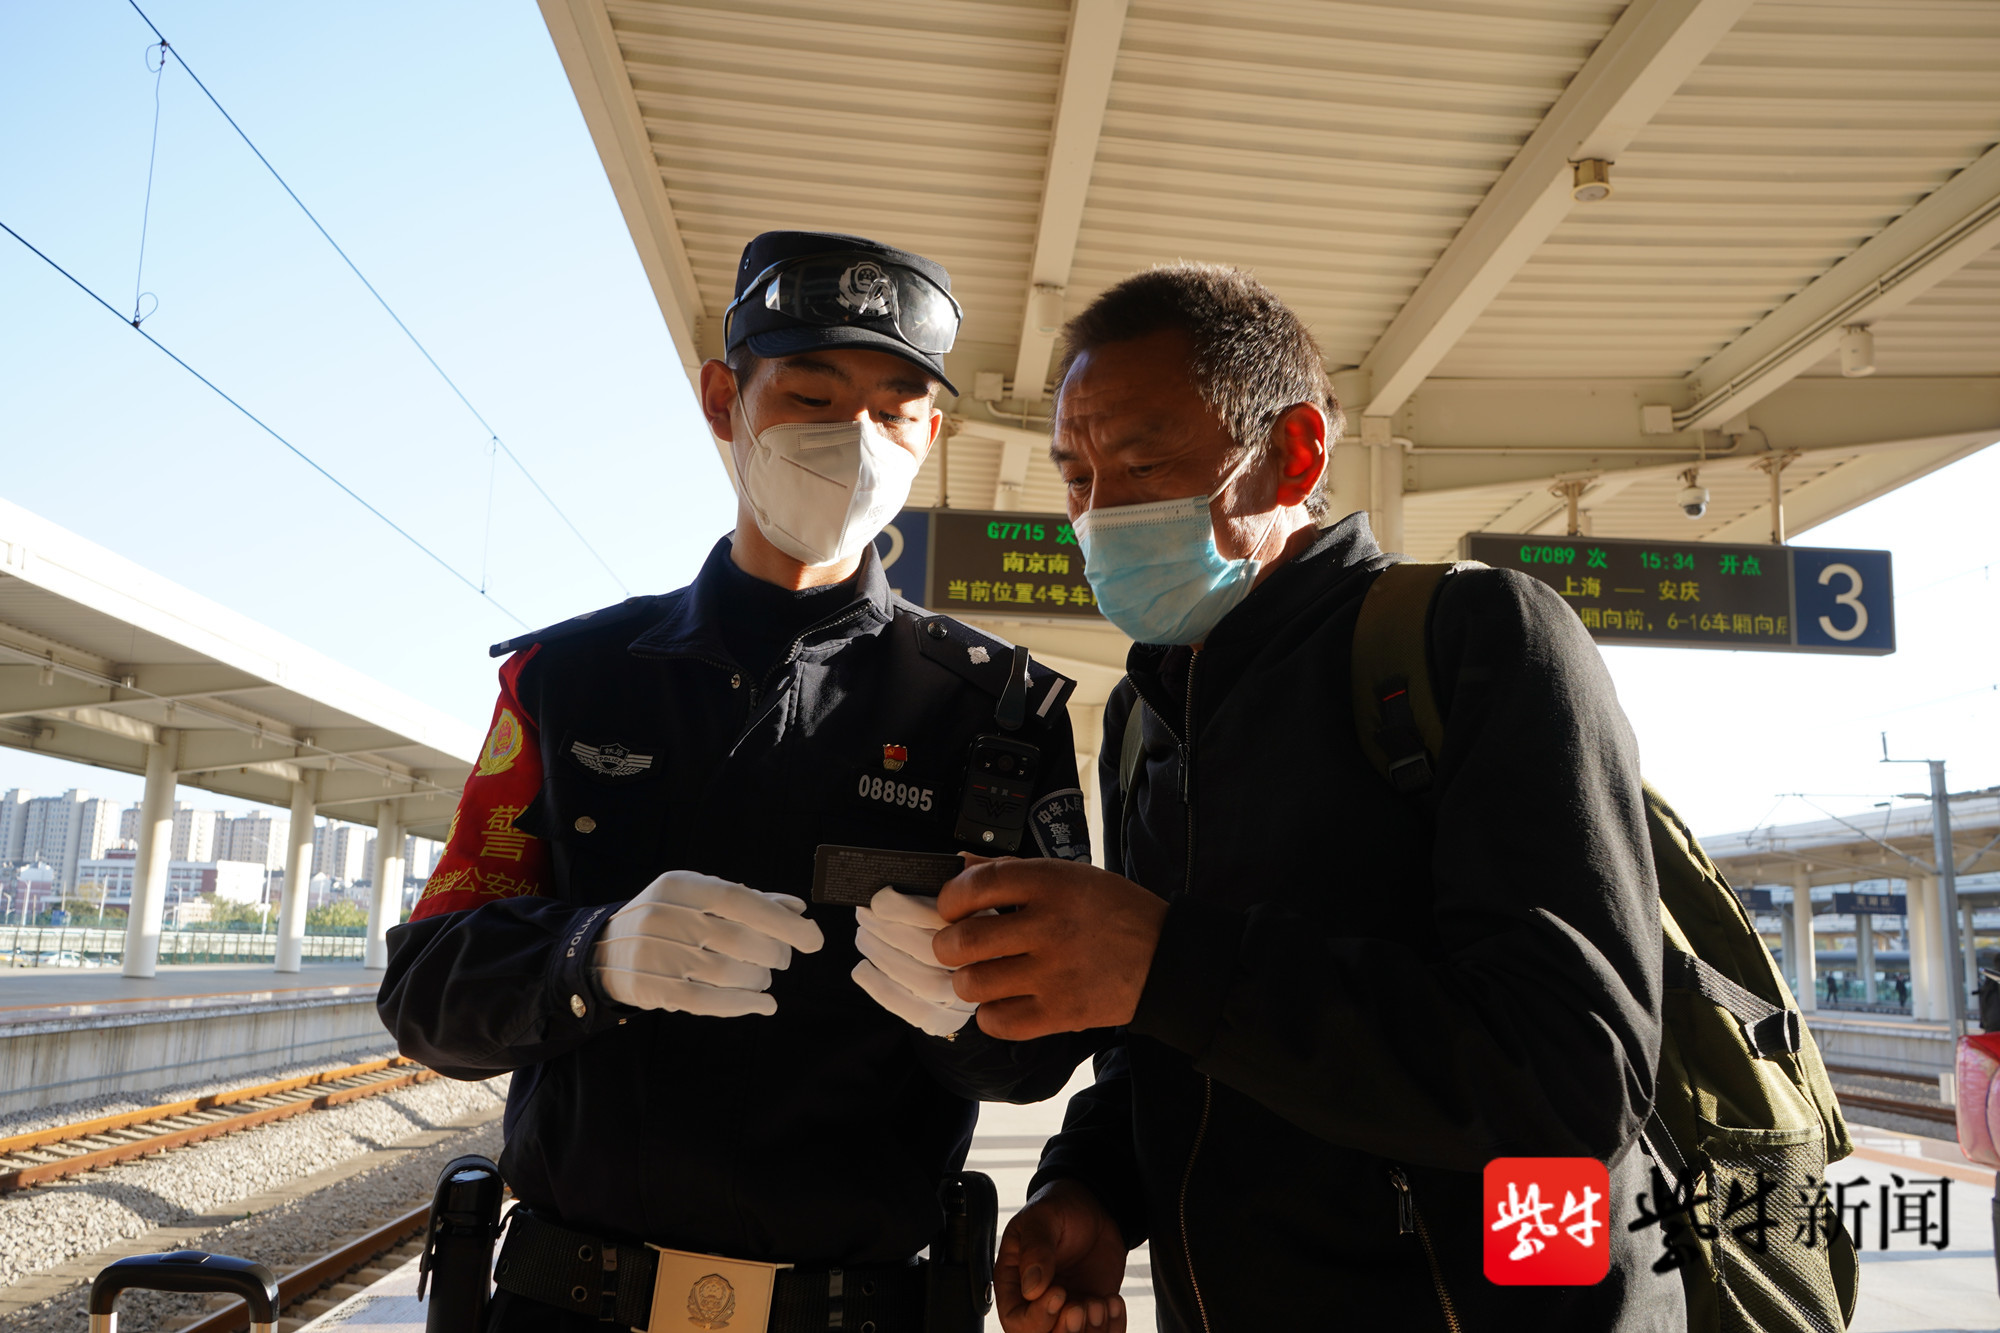 中共党员,2012年8月参加工作,现任南京铁路公安处乘警支队乘务二大队